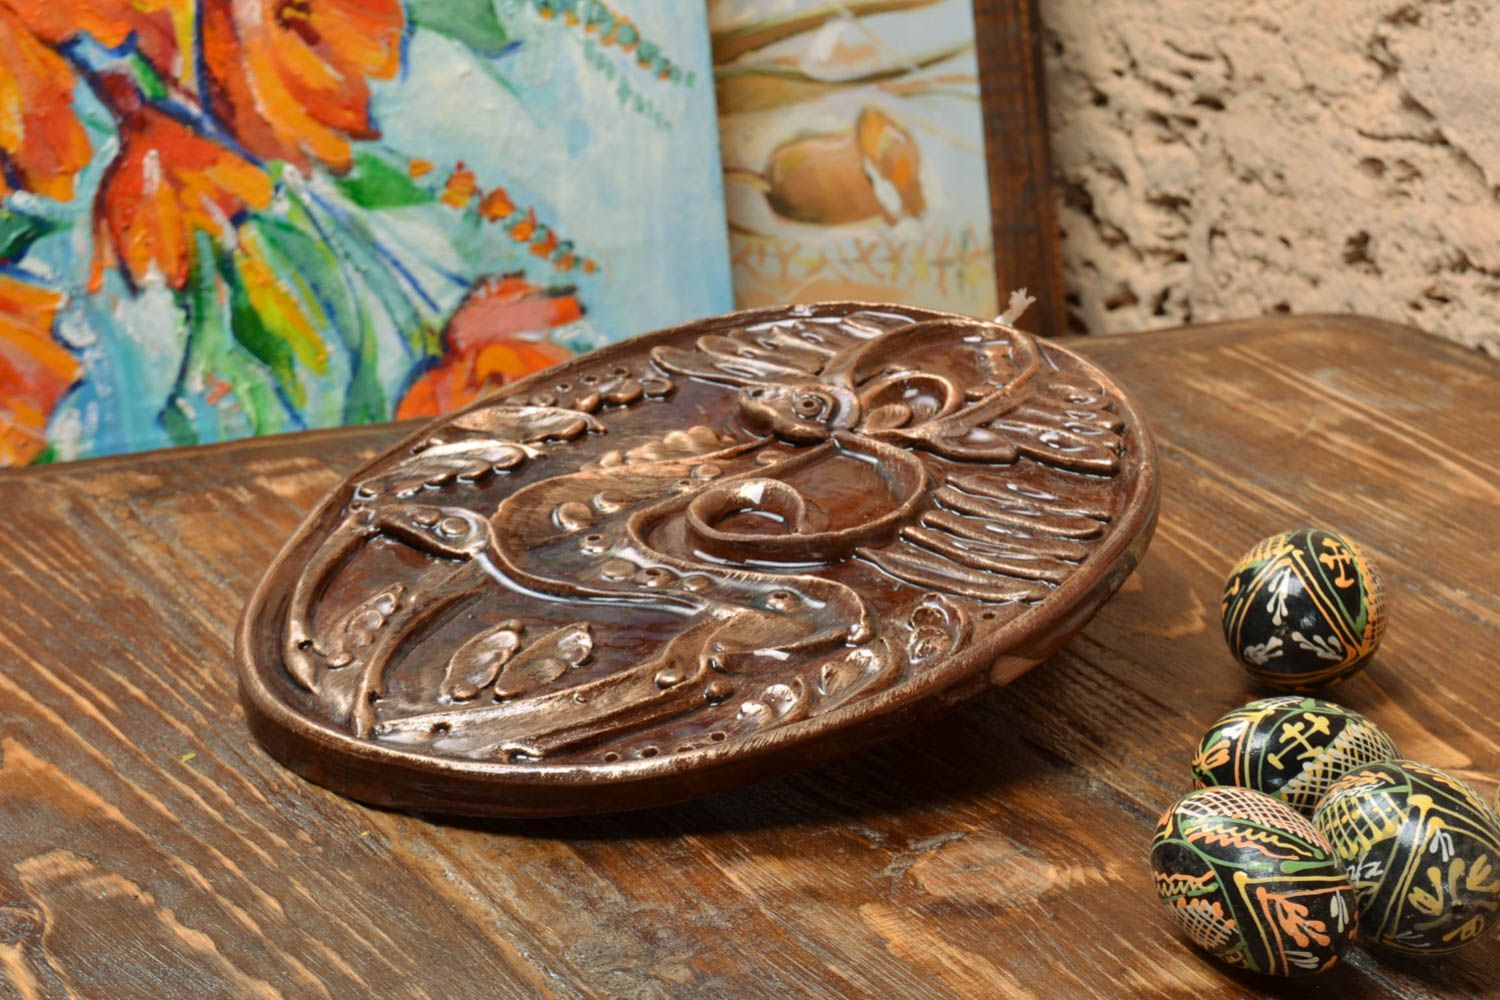 Панно из глины покрытое глазурью ручной работы круглое с оленем красивое  фото 1